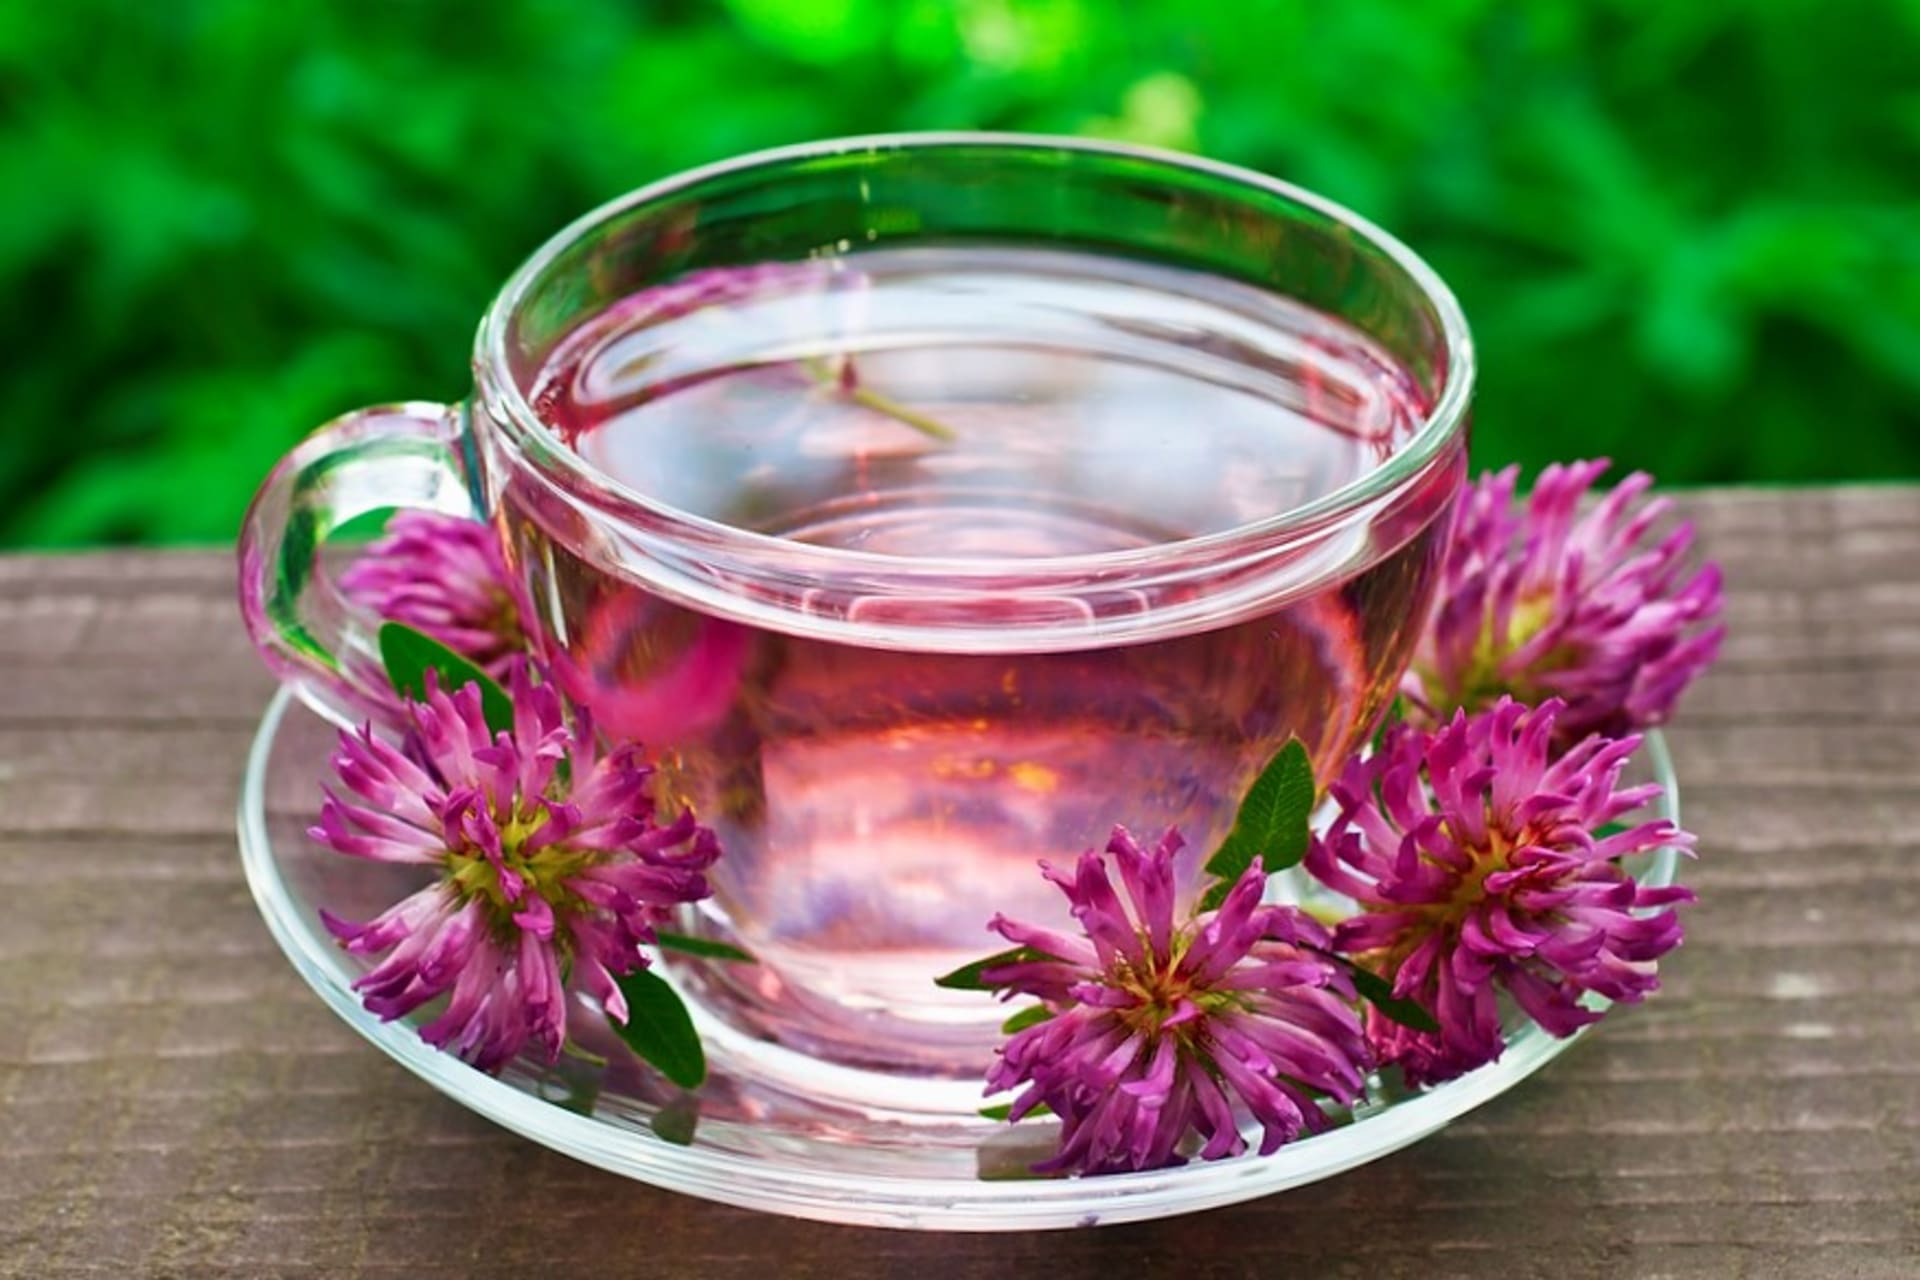 Čaj z květů jetele je léčivý, ale i lahodný. Můžeme ho užívat dlouhodobě. Tento čaj popíjíme třikrát denně .